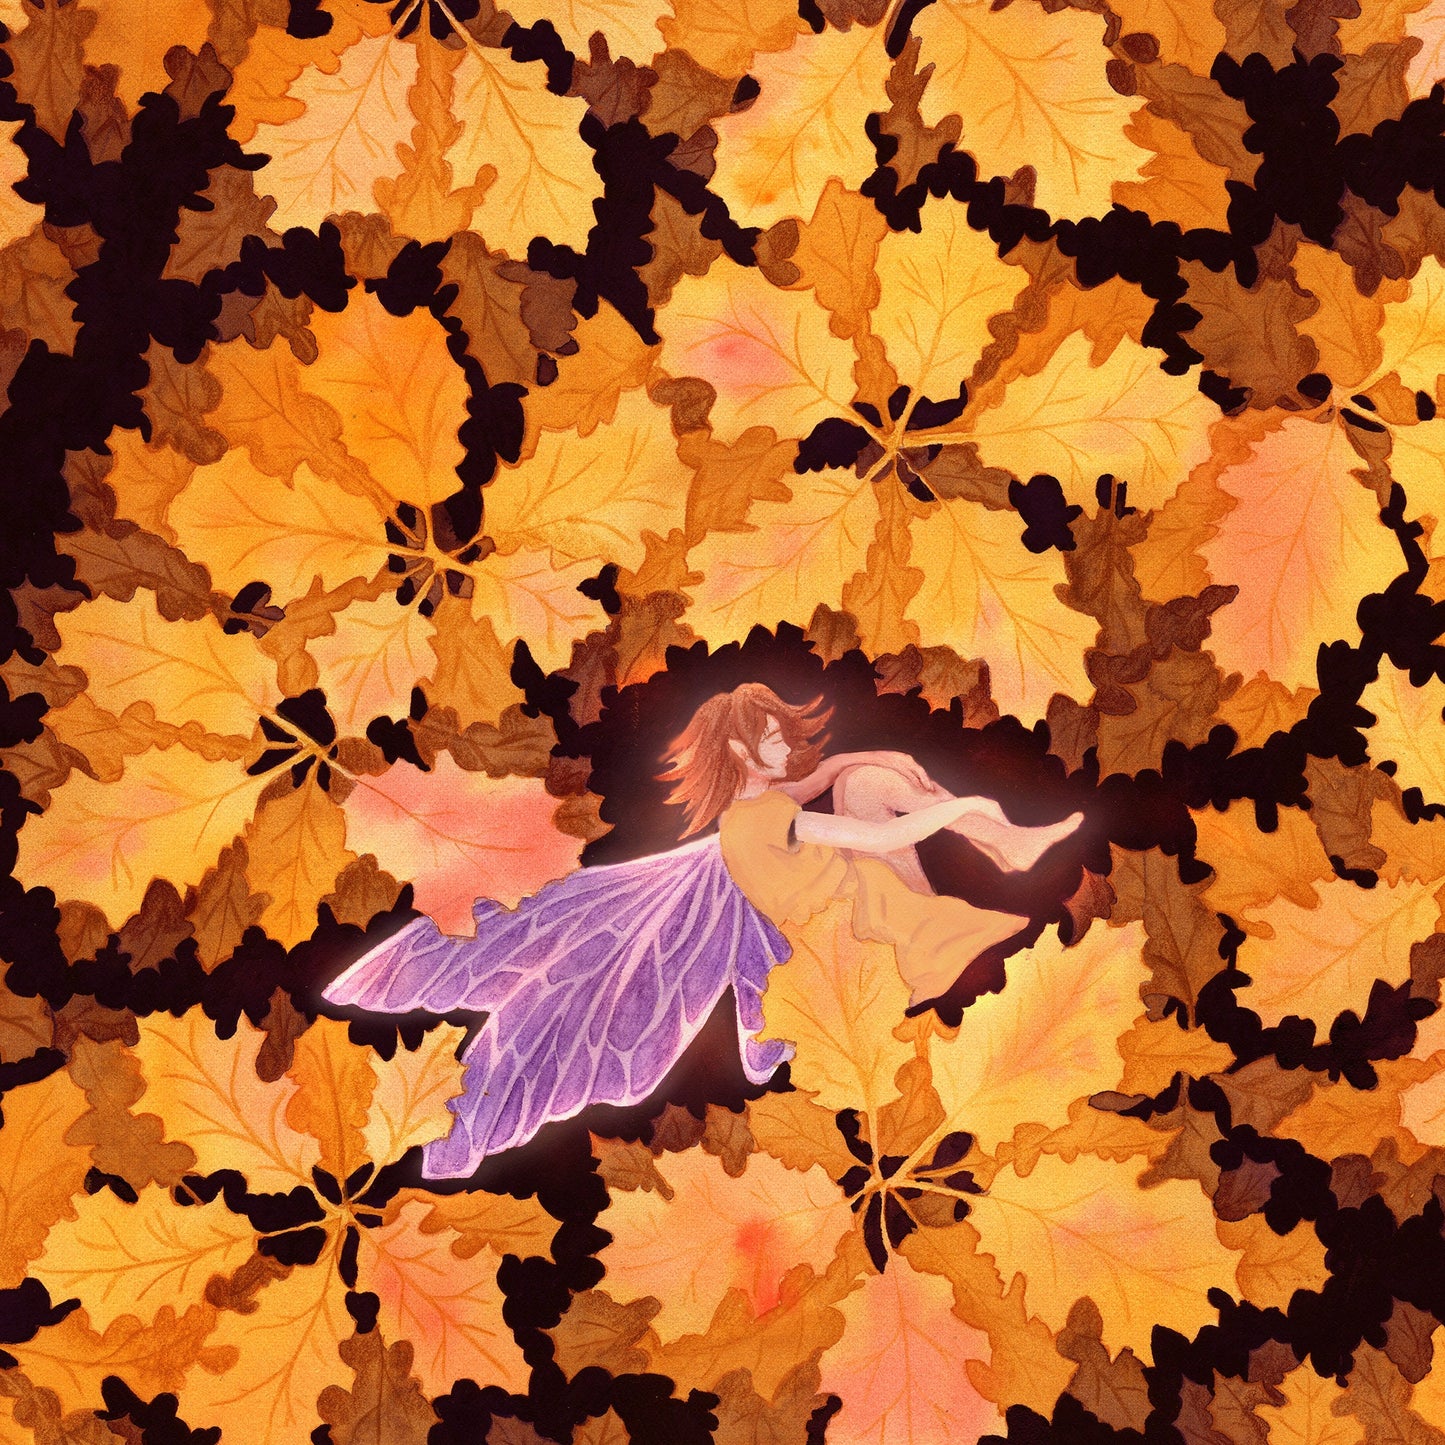 Herbstelfe - Herbstlicher Kunstdruck Aquarell- 37x29cm - handsigniert